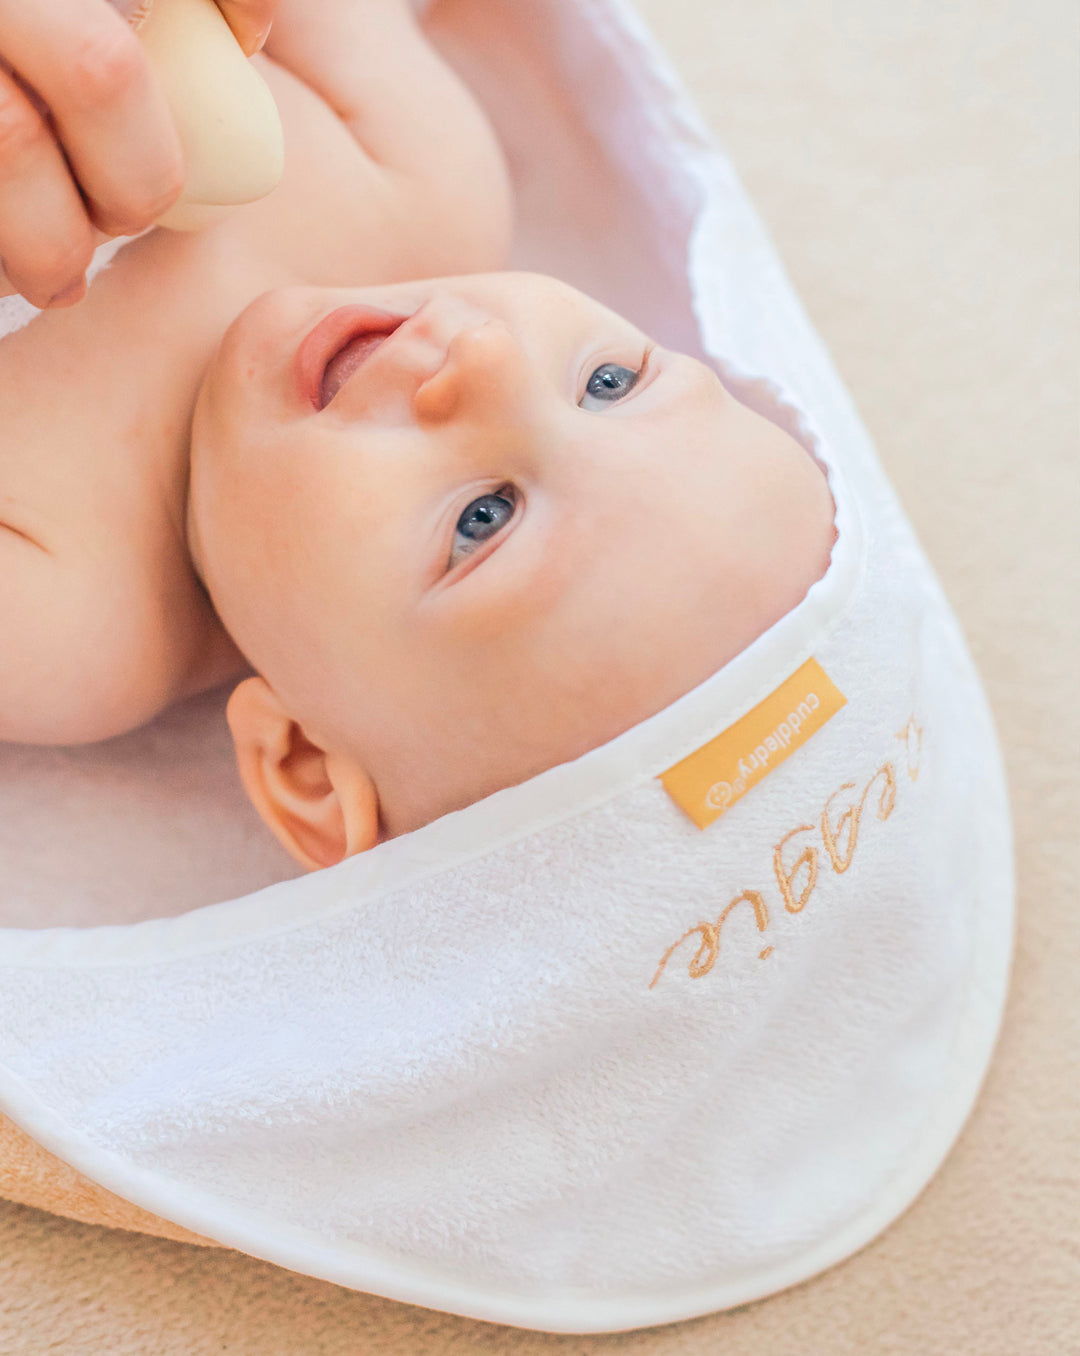 Cuddledry | hands free baby towel | beige | personalised